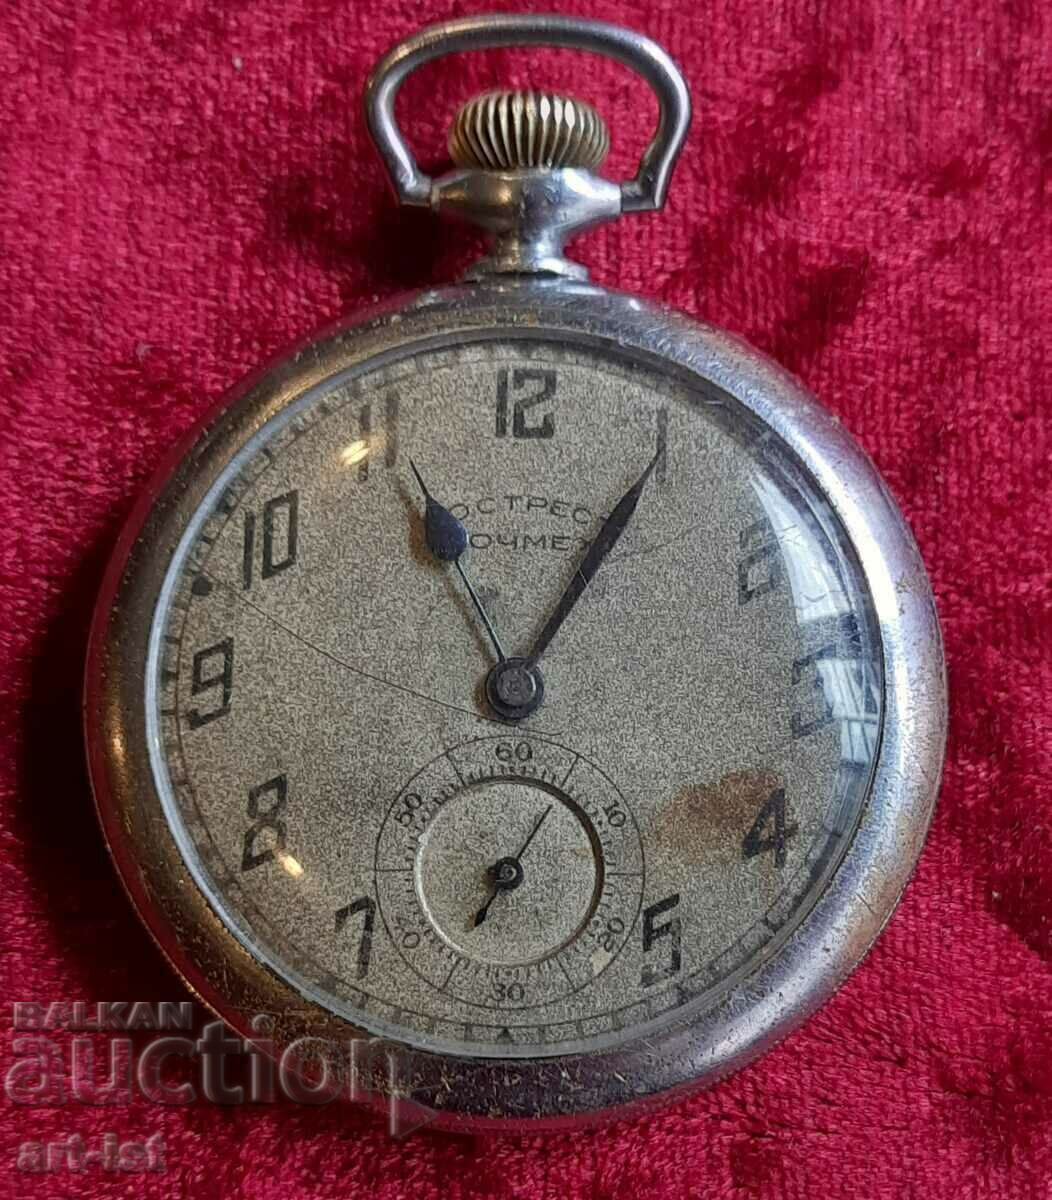 Rare Soviet watch 1935-40.